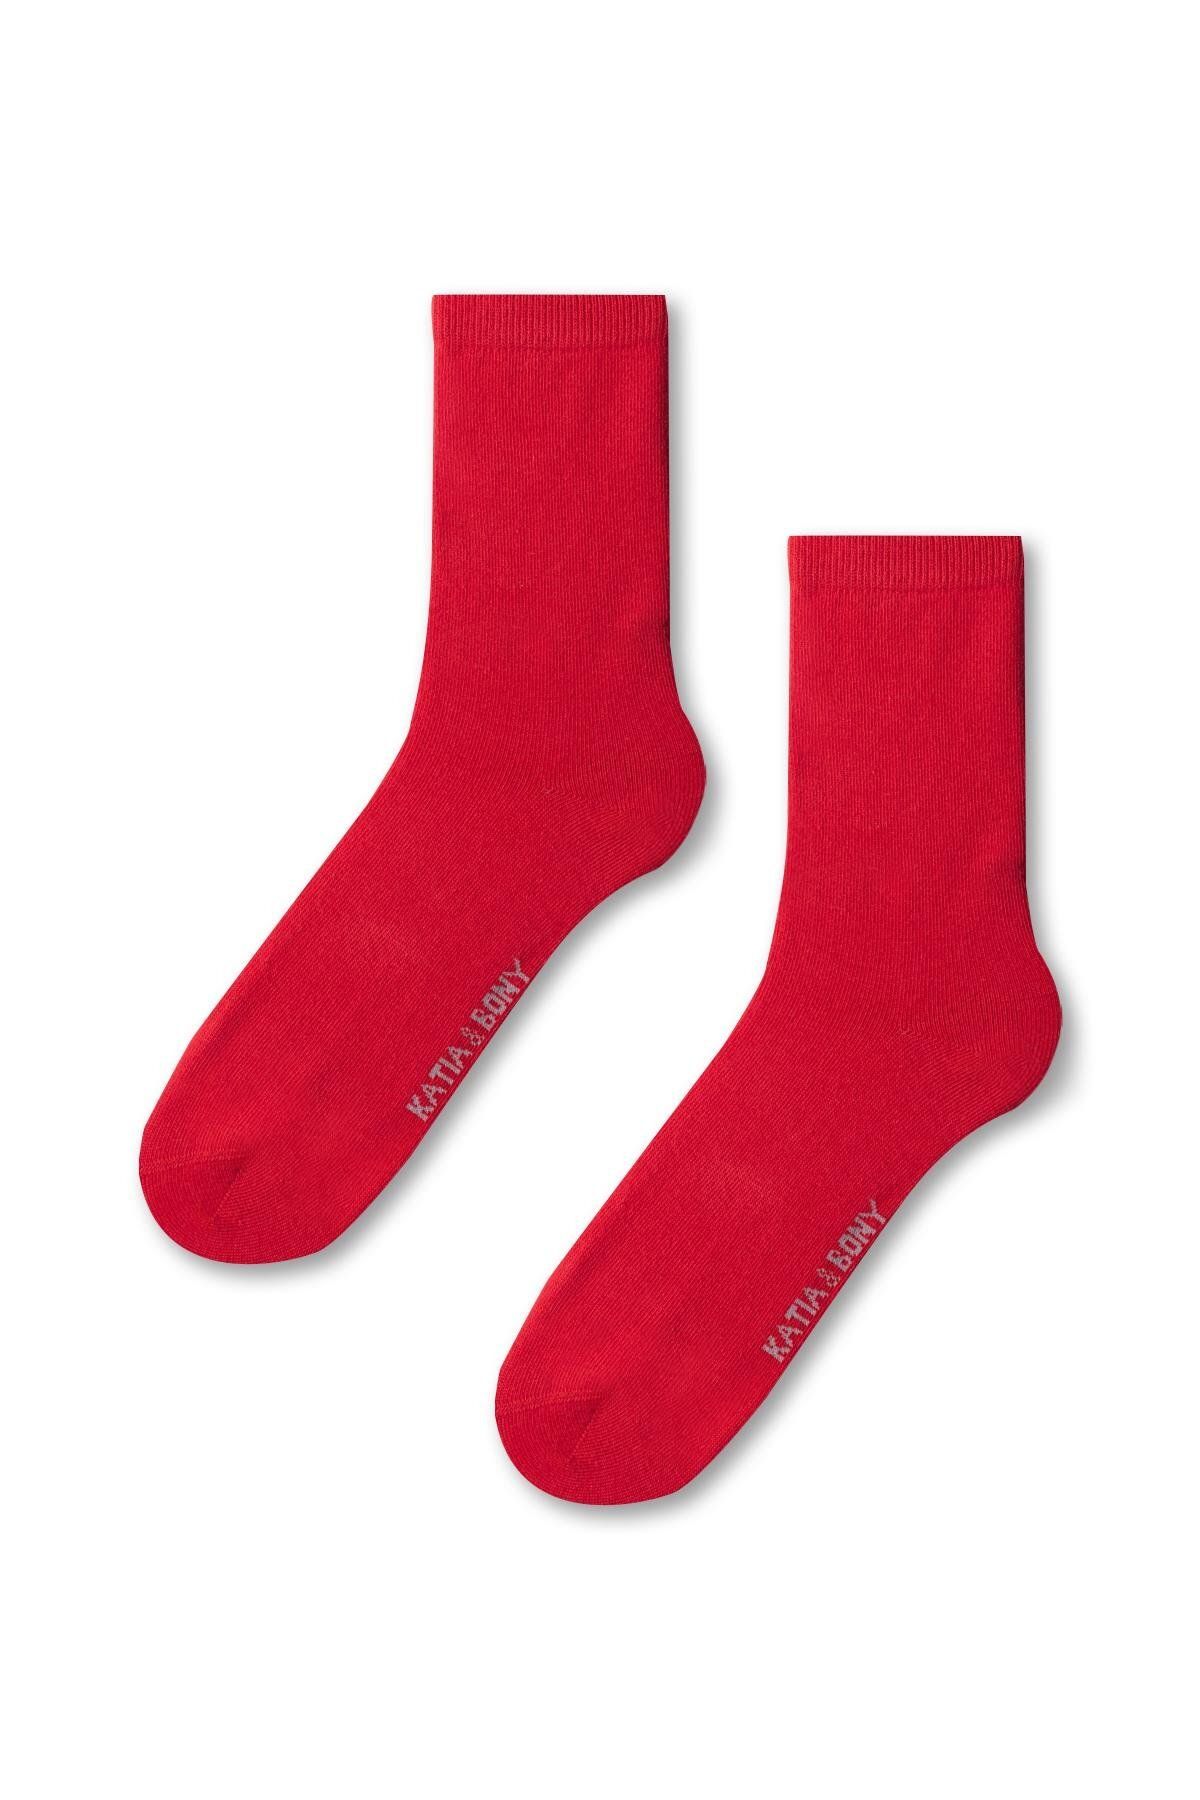 Katia & Bony Kadın Family Basic Soket Çorap Kırmızı